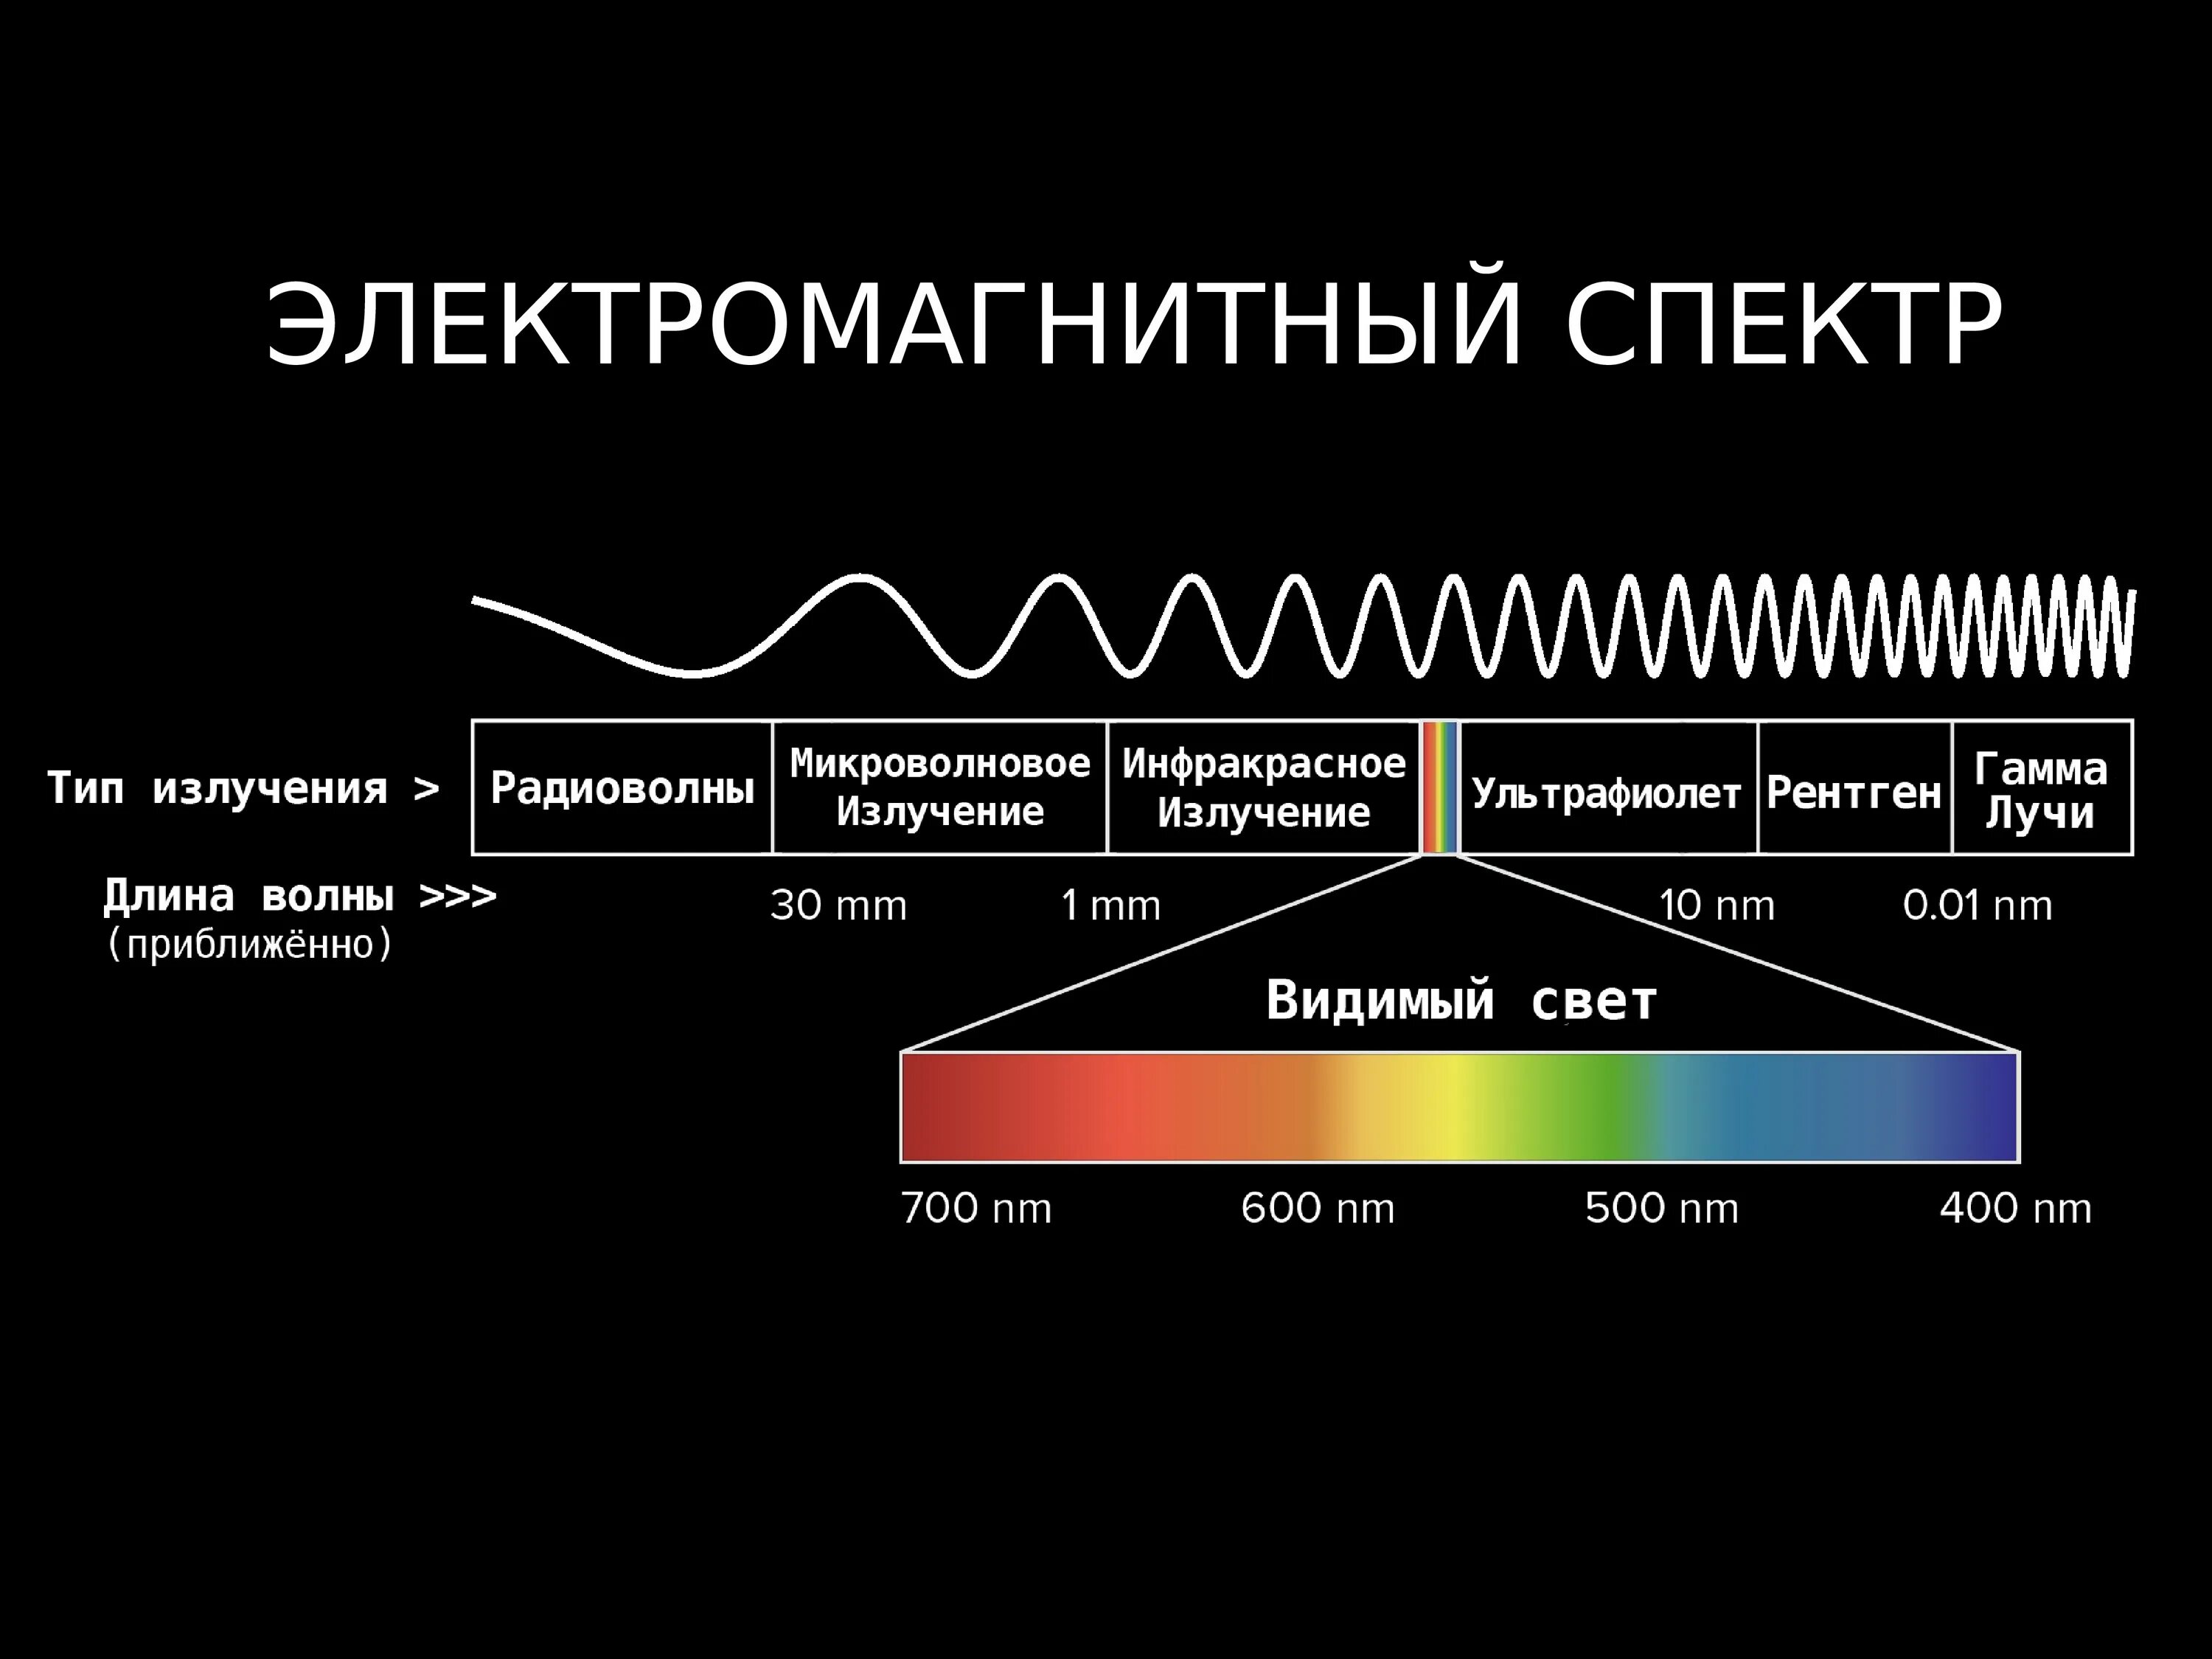 Диапазоны спектра электромагнитного излучения. Электромагнитное излучение спектр электромагнитного излучения. Спектр длин волн электромагнитных излучений. Длина волны электромагнитного излучения. Большую частоту излучения имеет